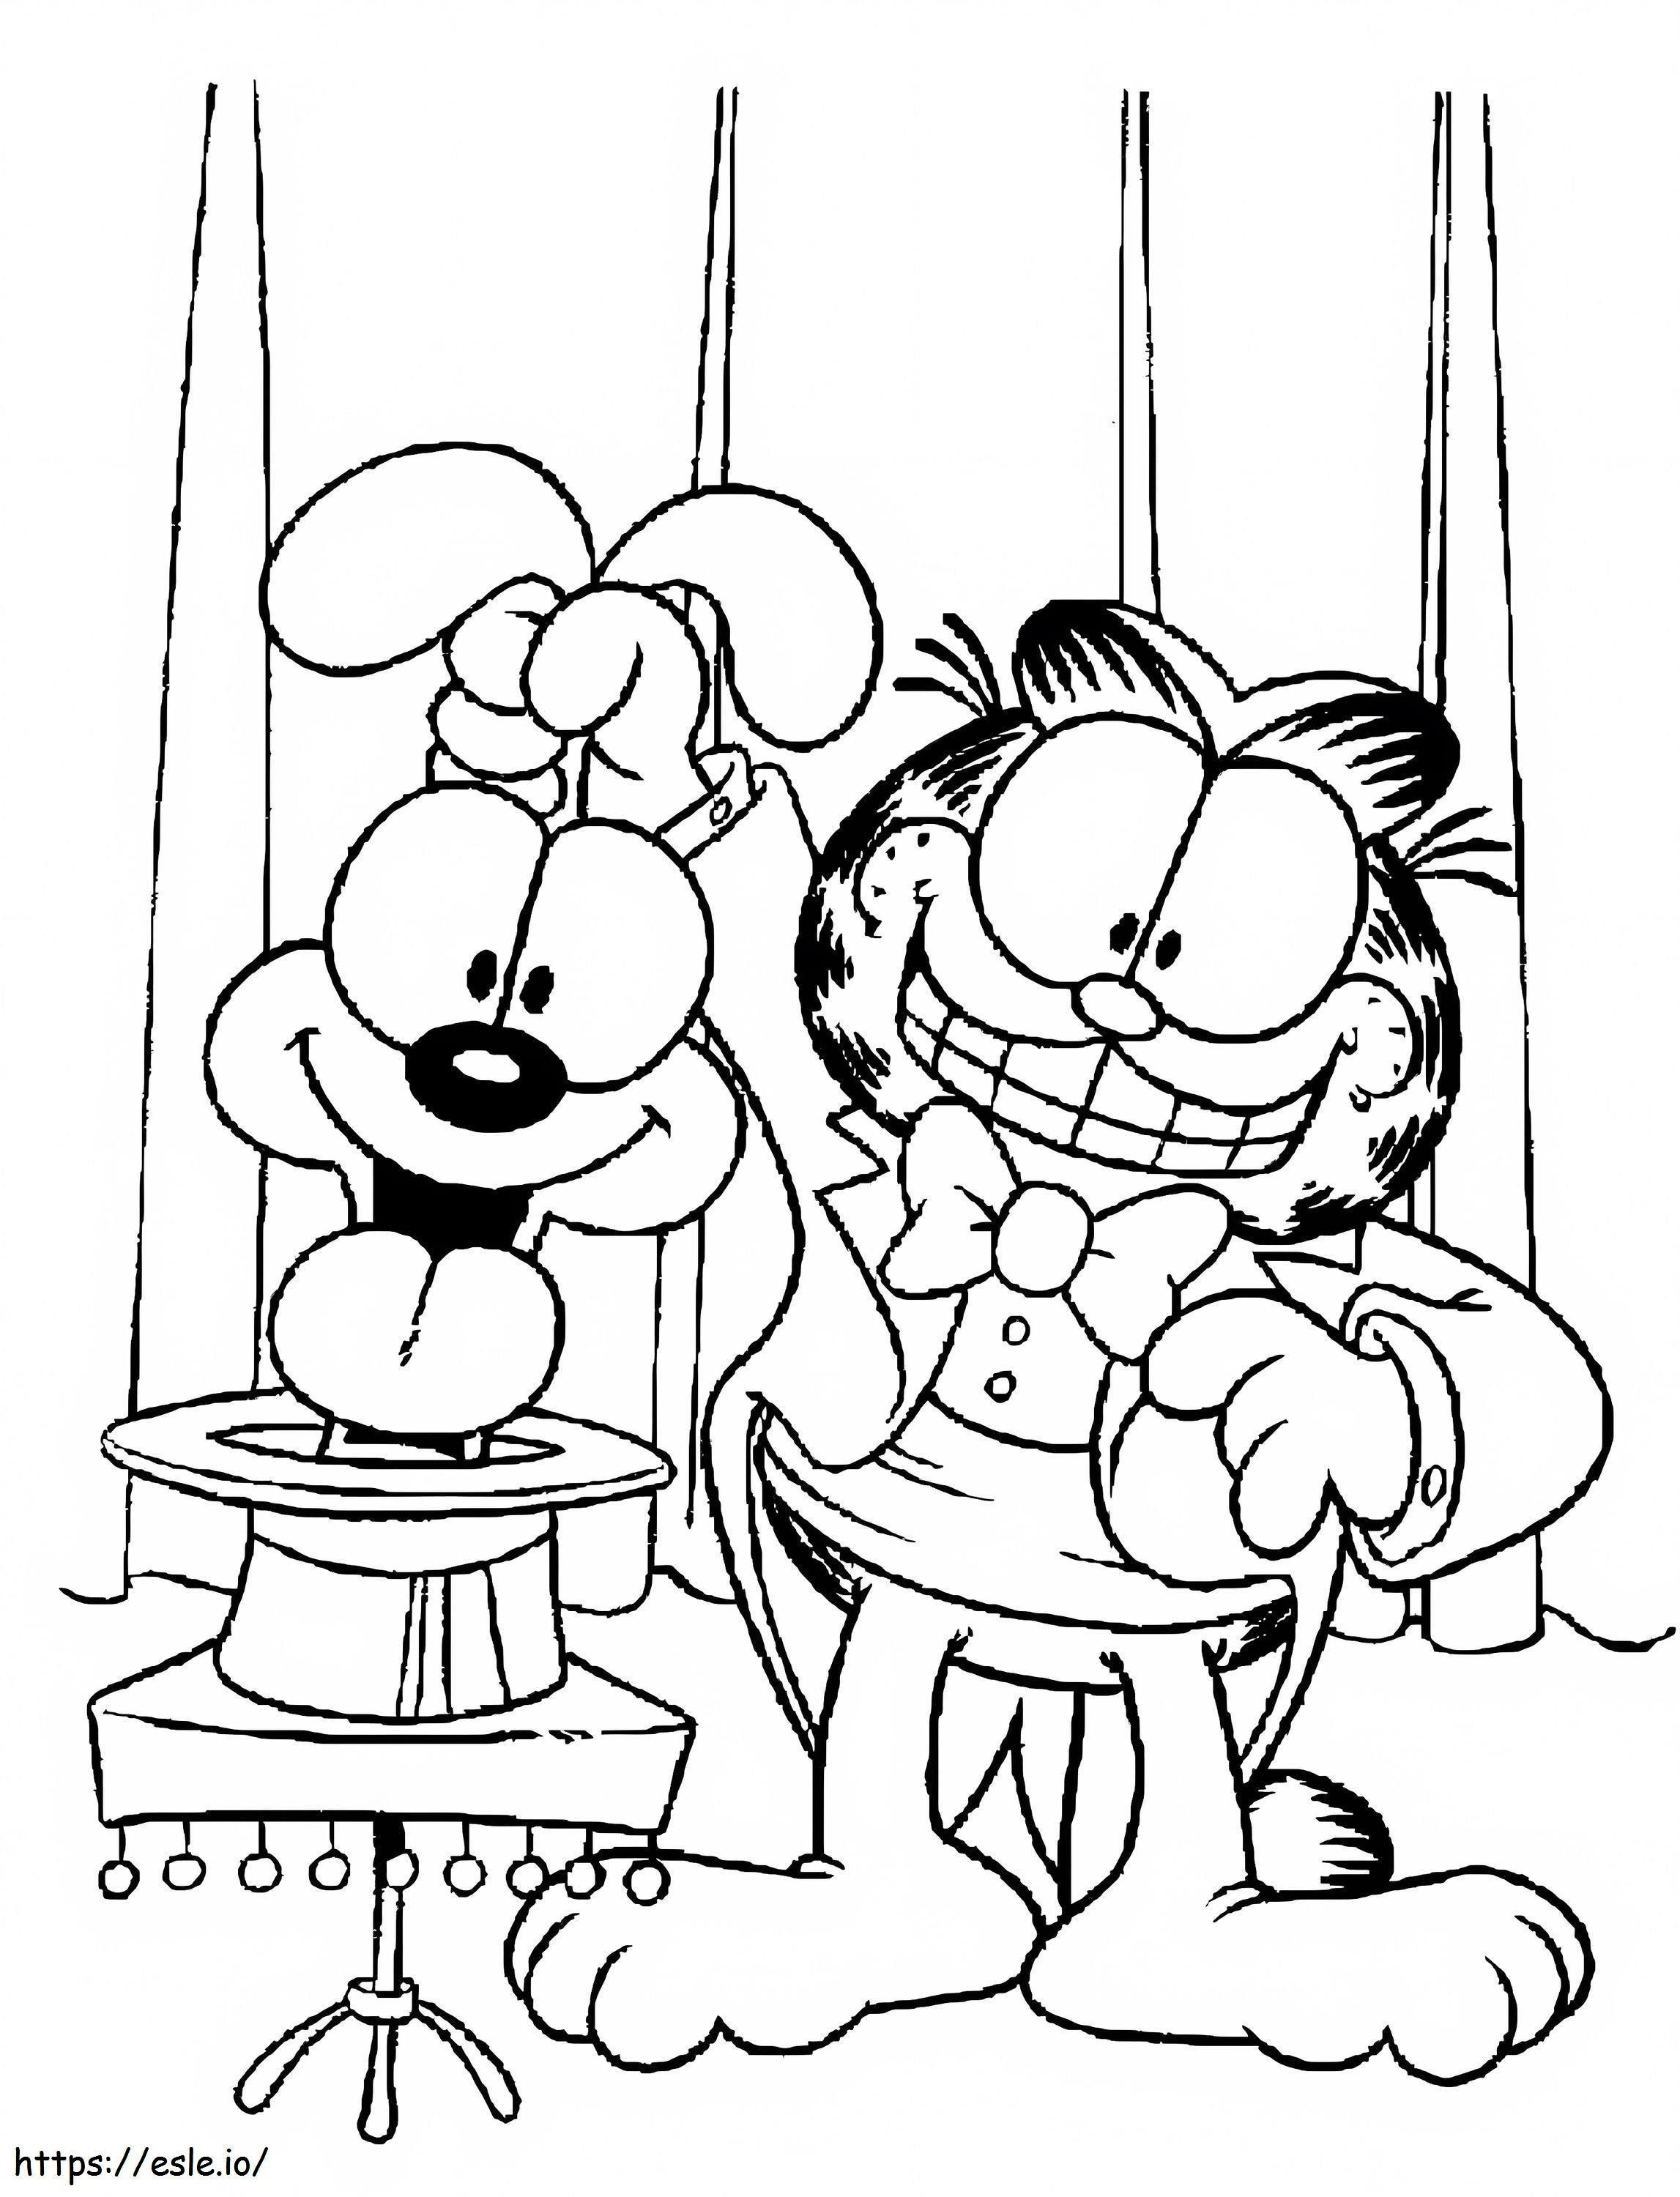 Garfield e Odie eseguono uno spettacolo di magia da colorare